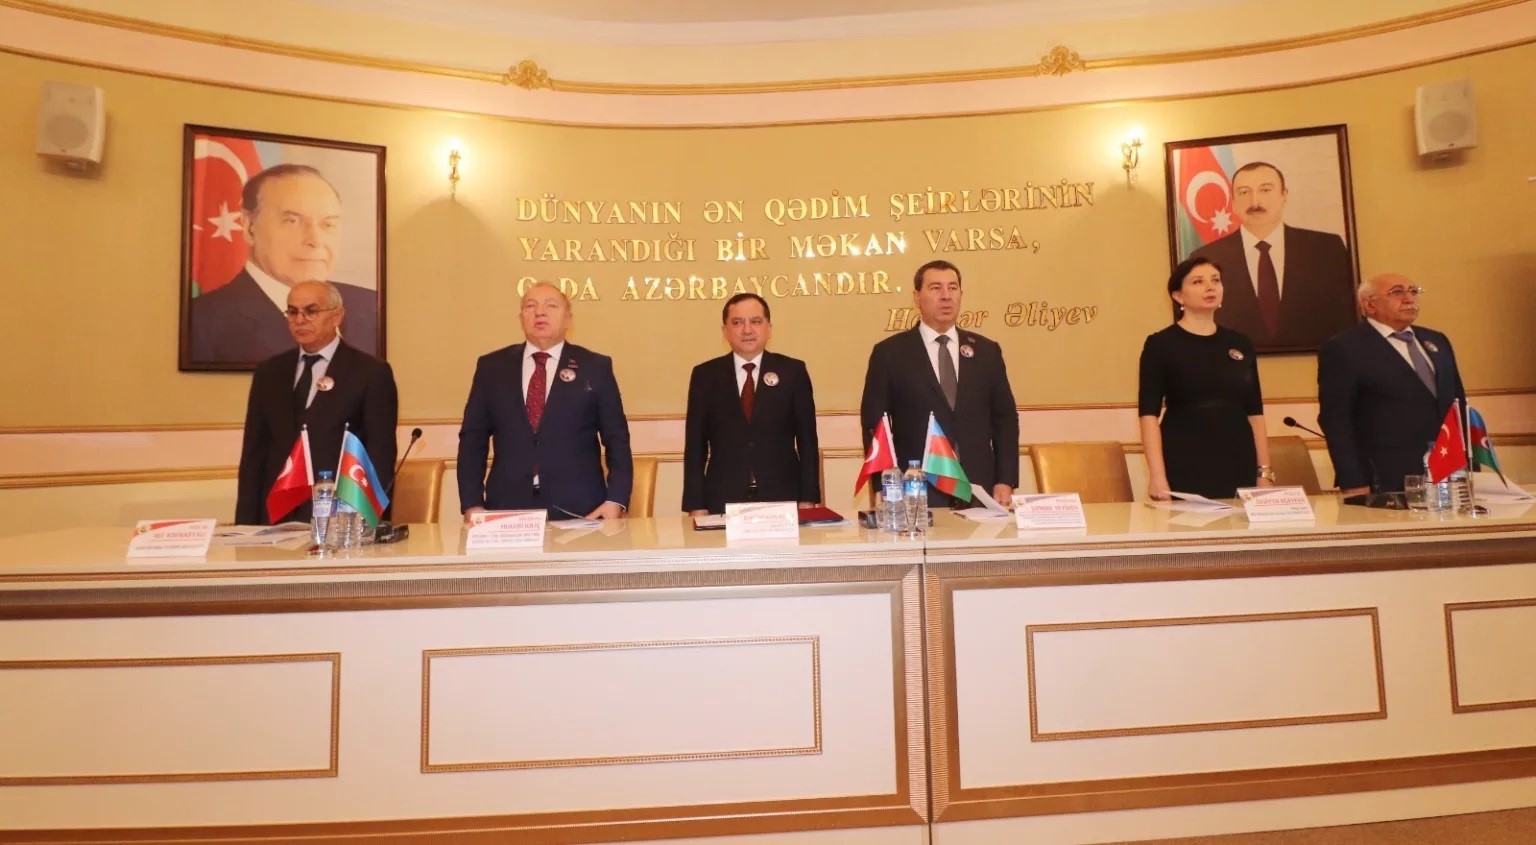 ebyü ortaklığında ‘haydar aliyev çağdaş azerbaycan cumhuriyeti’nin banisidir’ konulu uluslararası konferans düzenlendi